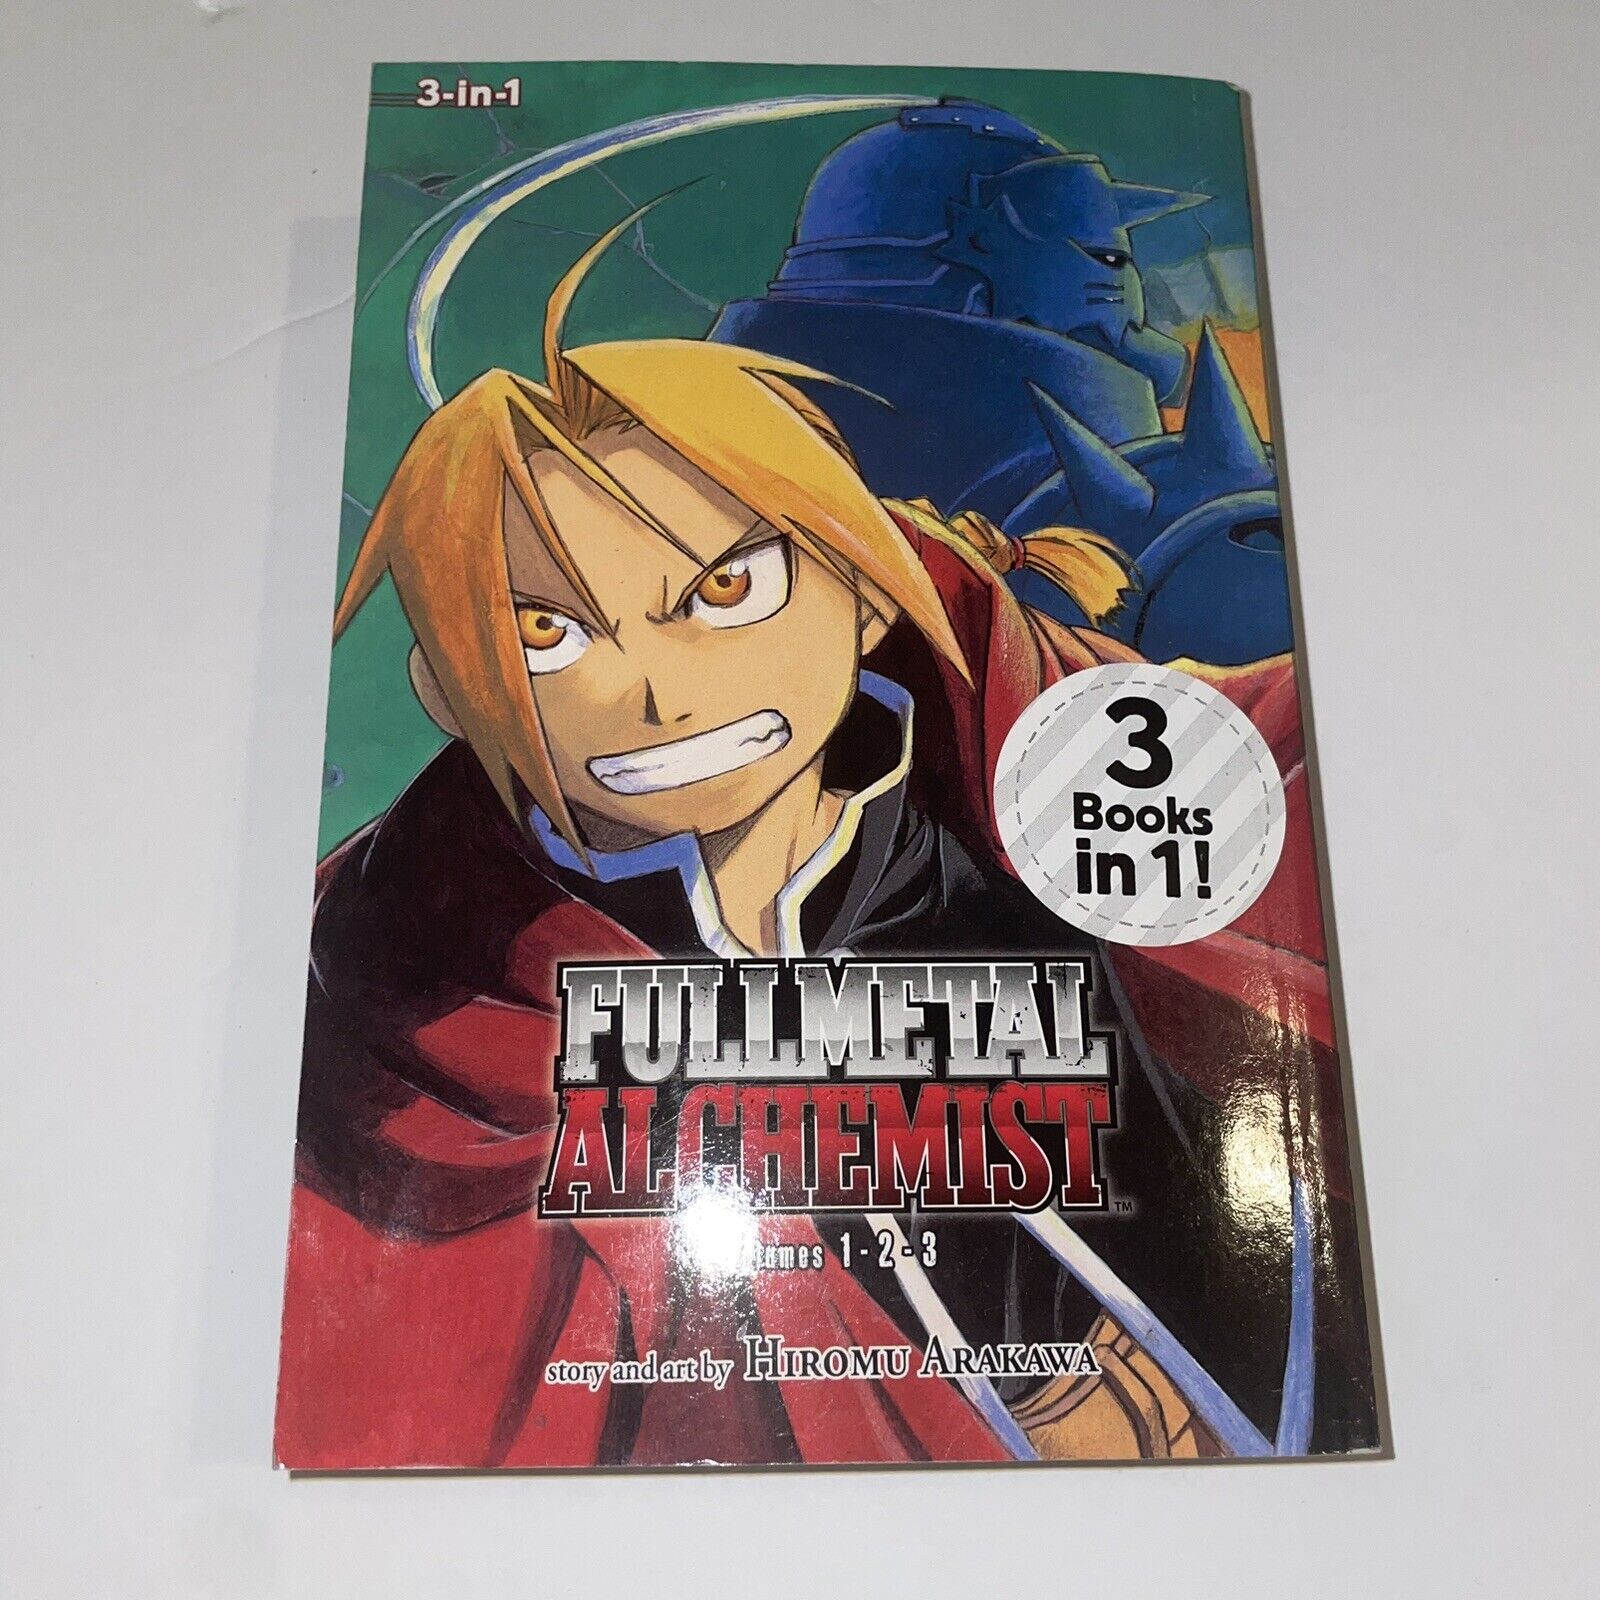 Fullmetal Alchemist, Vol. 1-3 (Fullmetal Alchemist 3-in-1) - Paperback - GOOD